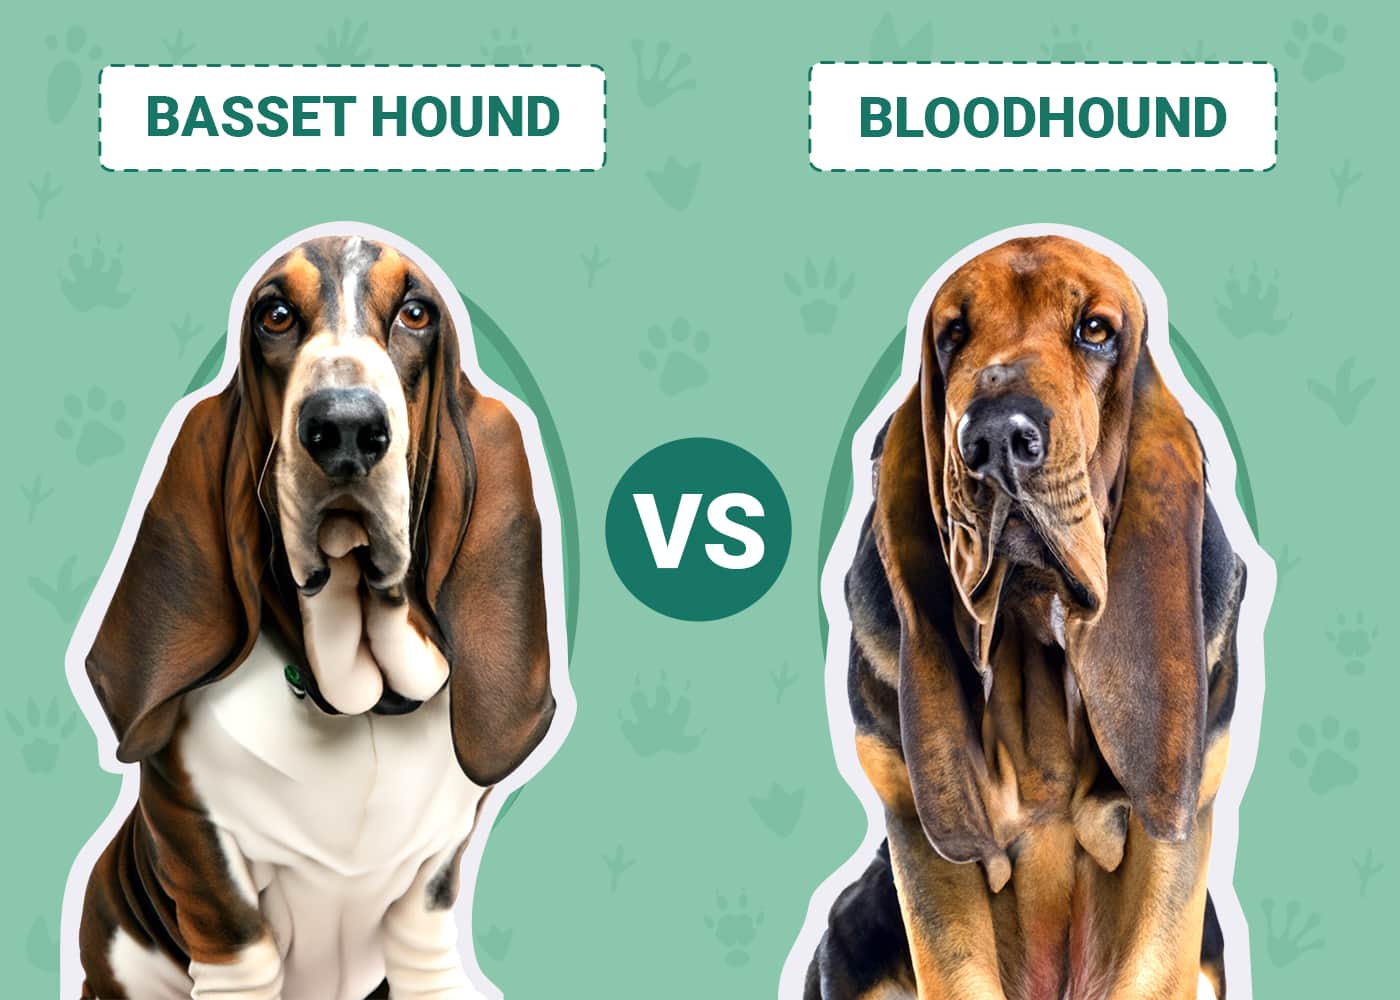 Basset Hound vs Bloodhound